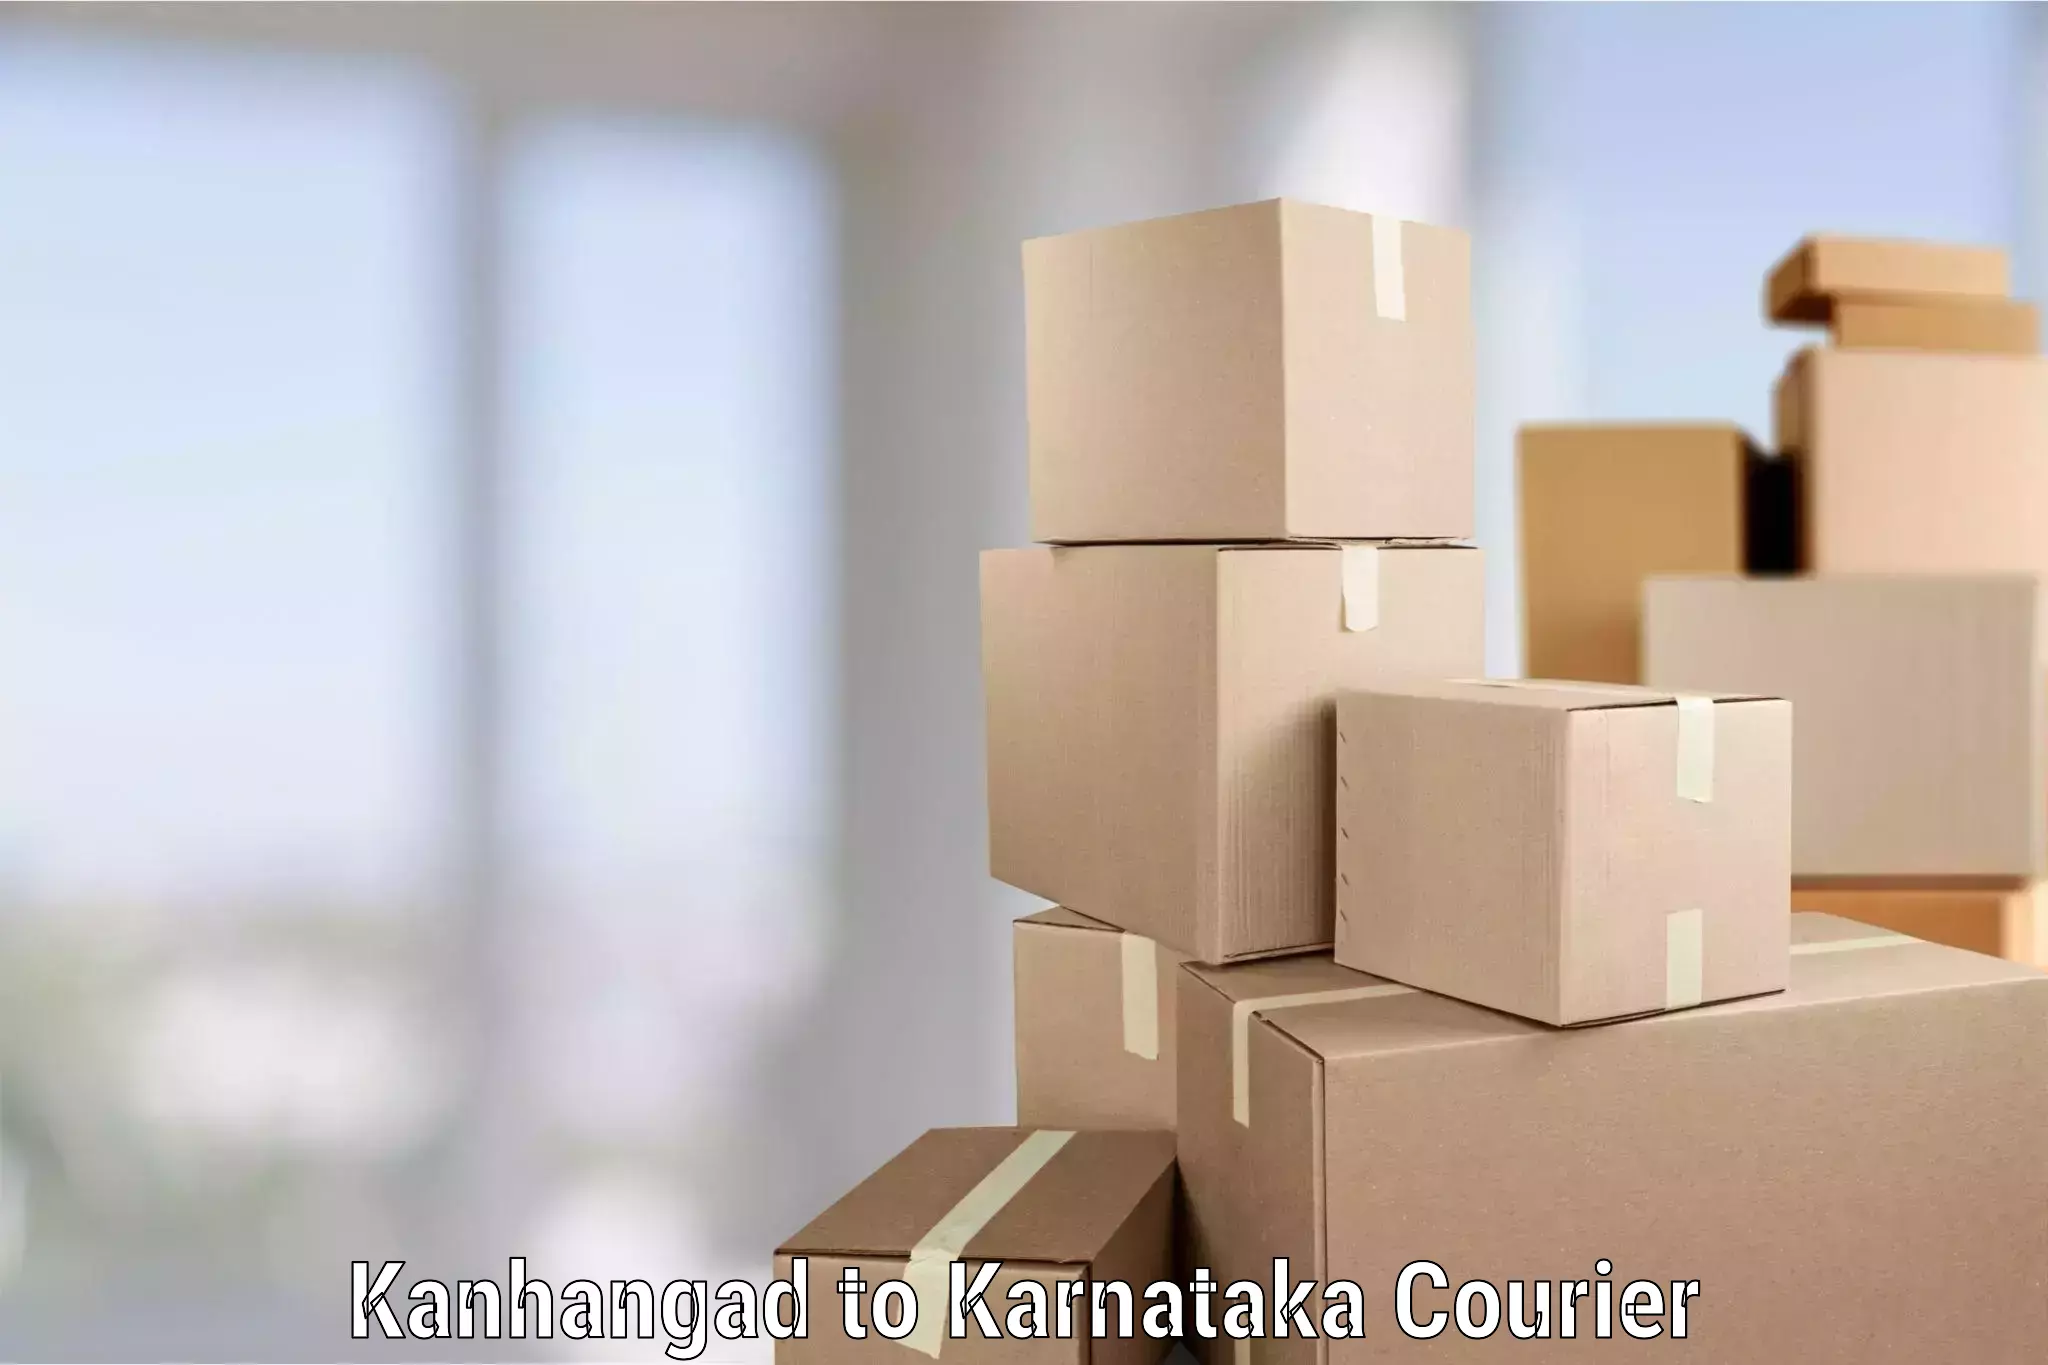 Furniture moving experts Kanhangad to Karnataka